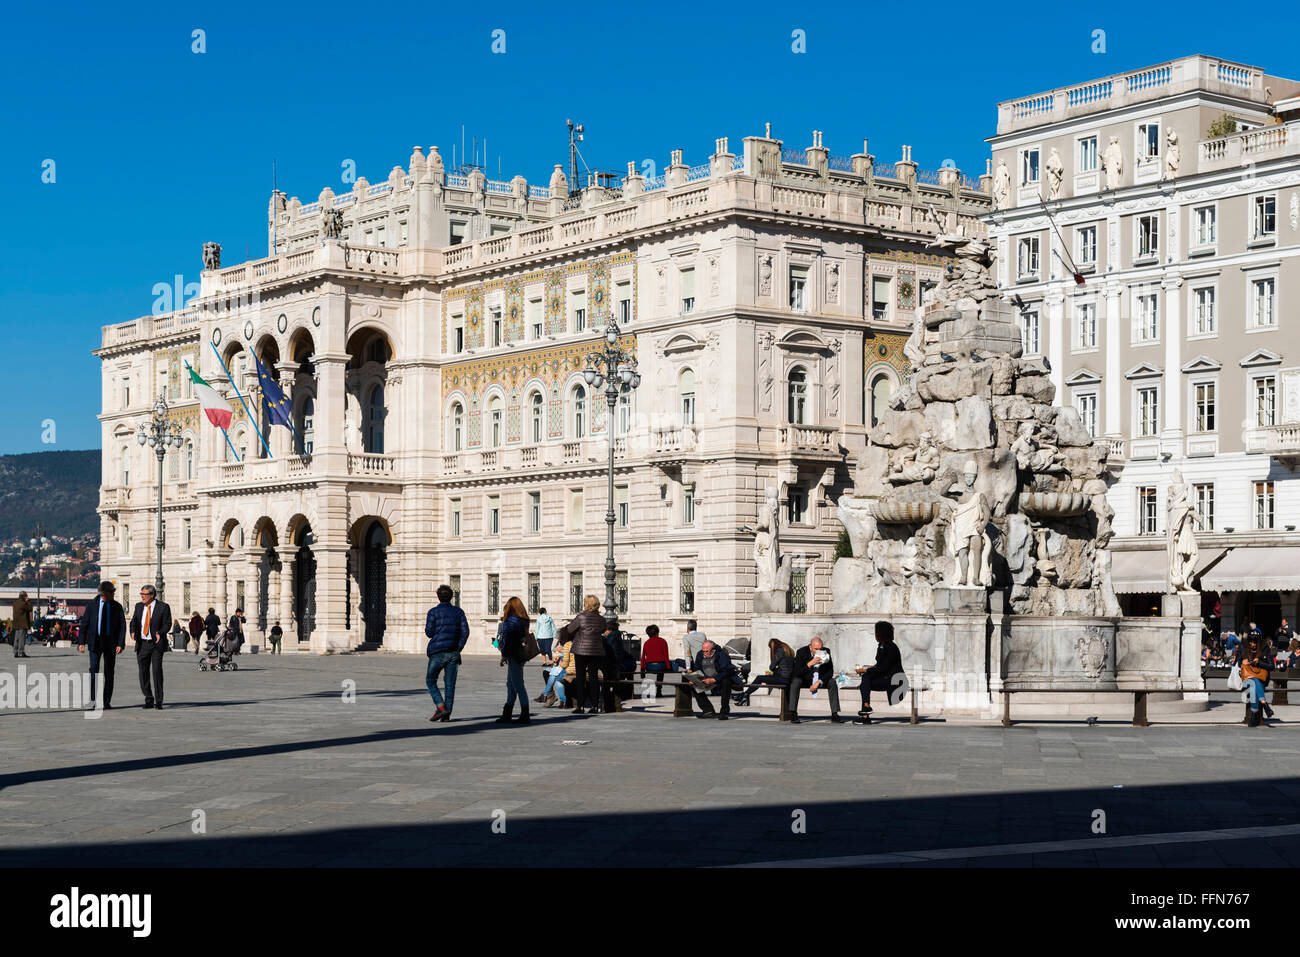 Piazza Unita d'Italia square in Trieste city centre, Italy, Europe Stock Photo